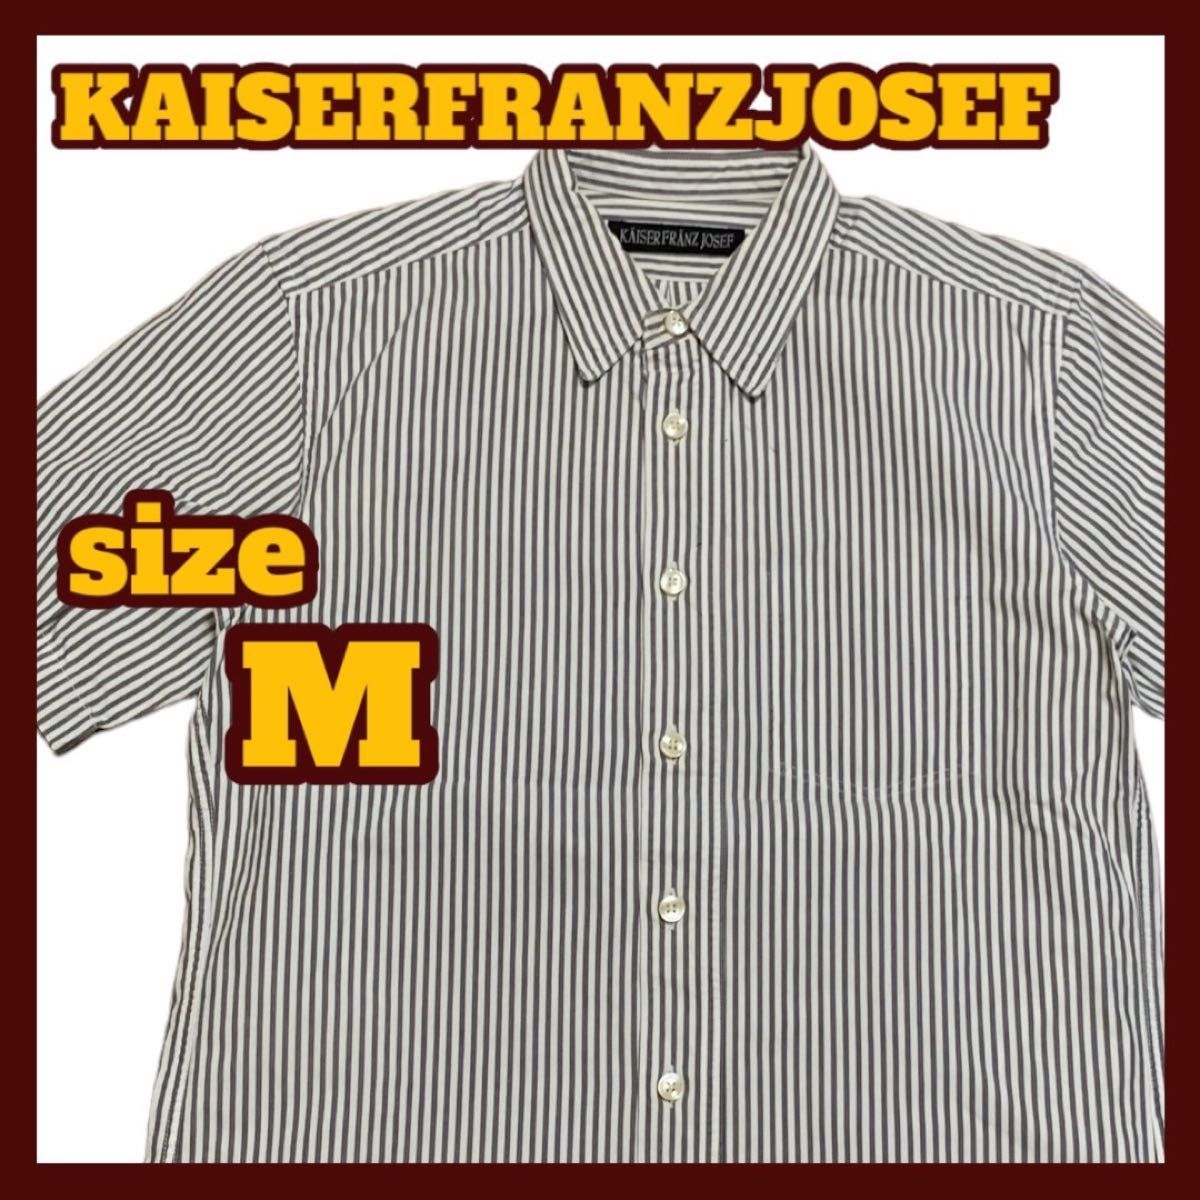  KAISER FRANZ JOSEF 半袖 ストライプ シャツ ホワイト×グレー Mサイズ 日本製